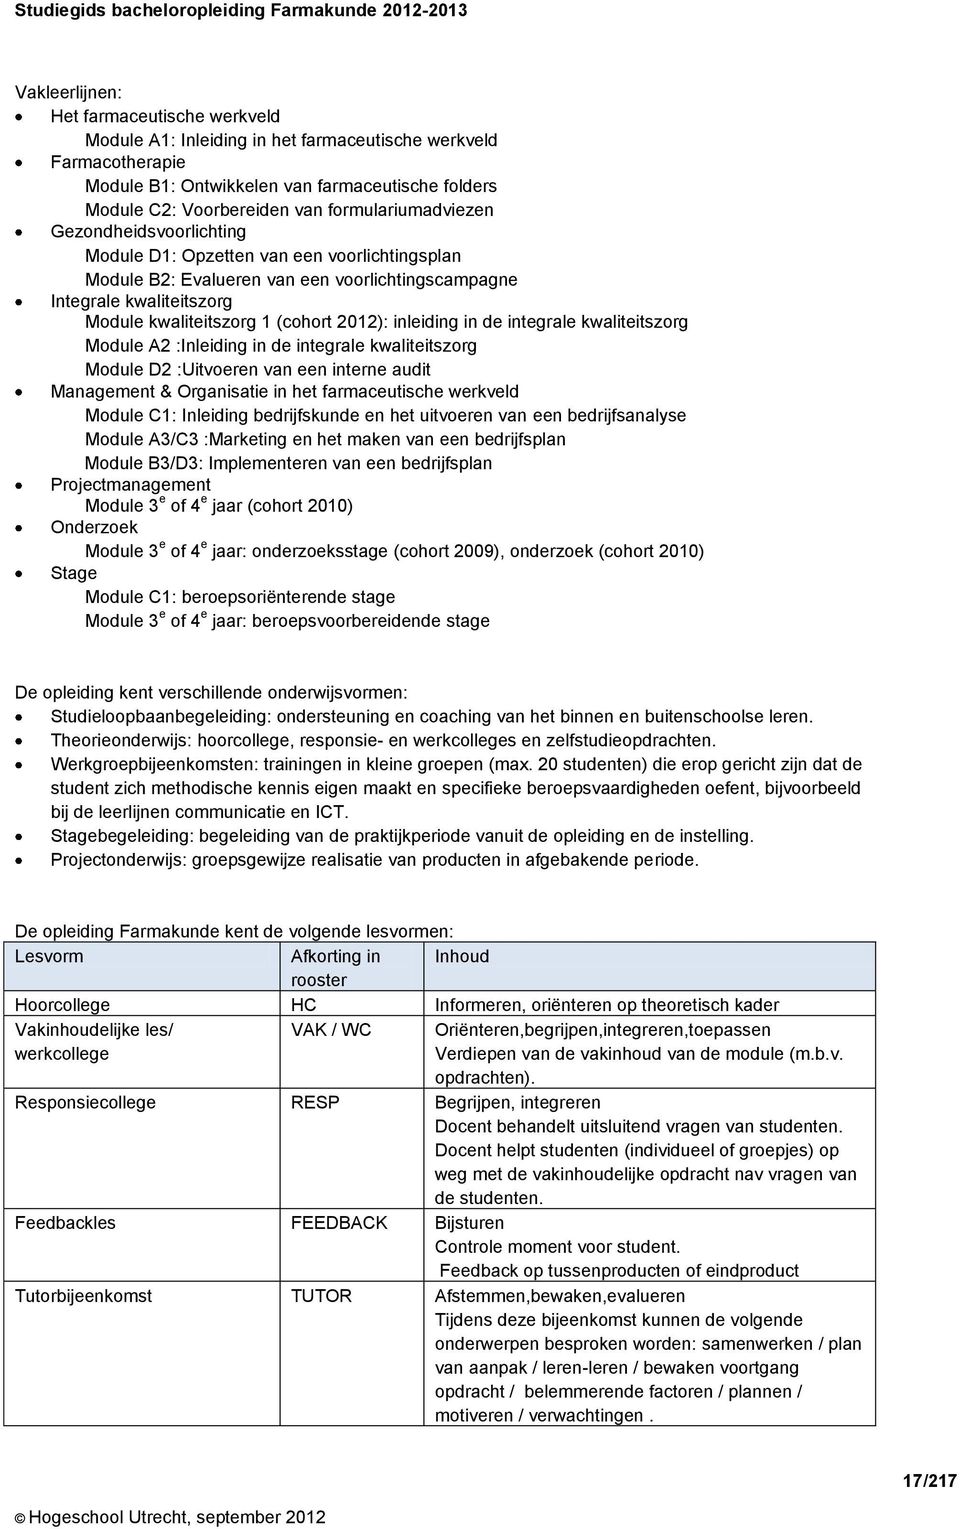 2012): inleiding in de integrale kwaliteitszorg Module A2 :Inleiding in de integrale kwaliteitszorg Module D2 :Uitvoeren van een interne audit Management & Organisatie in het farmaceutische werkveld